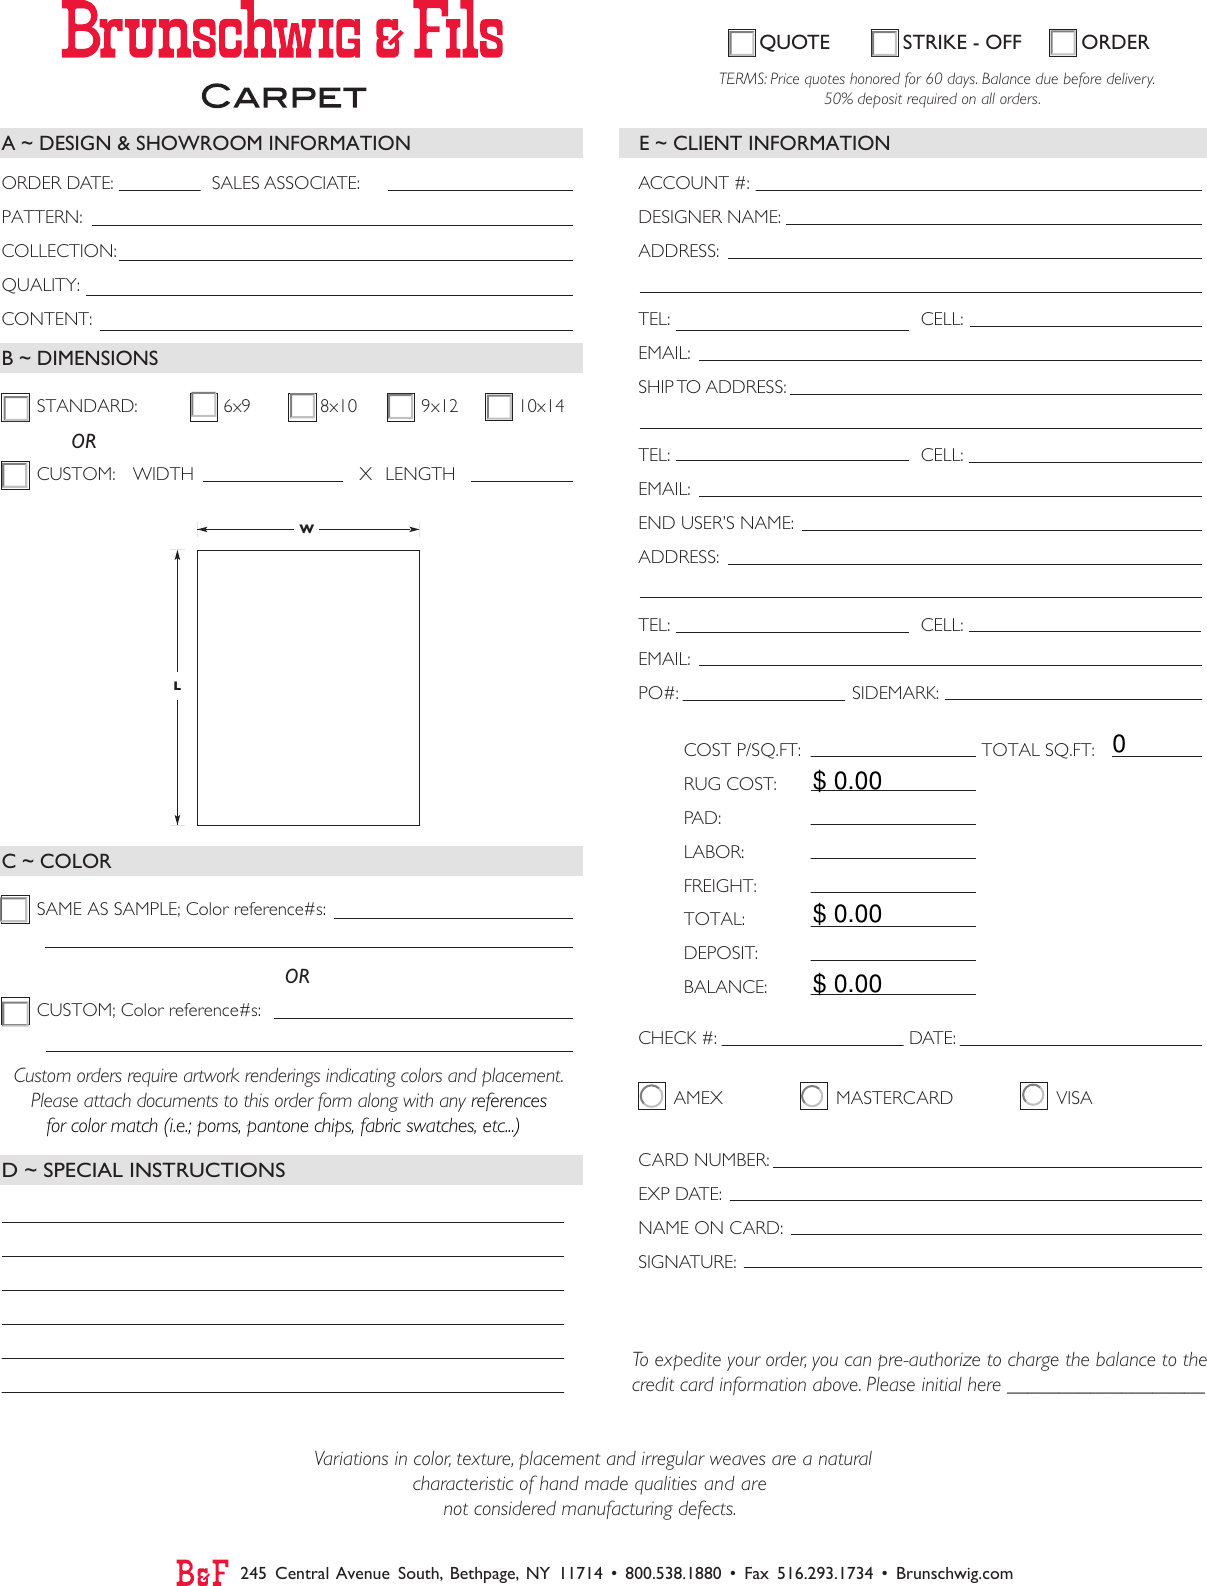 Page 1 of 1 - Brunschwig_Order_Form  Brunschwig Order Form